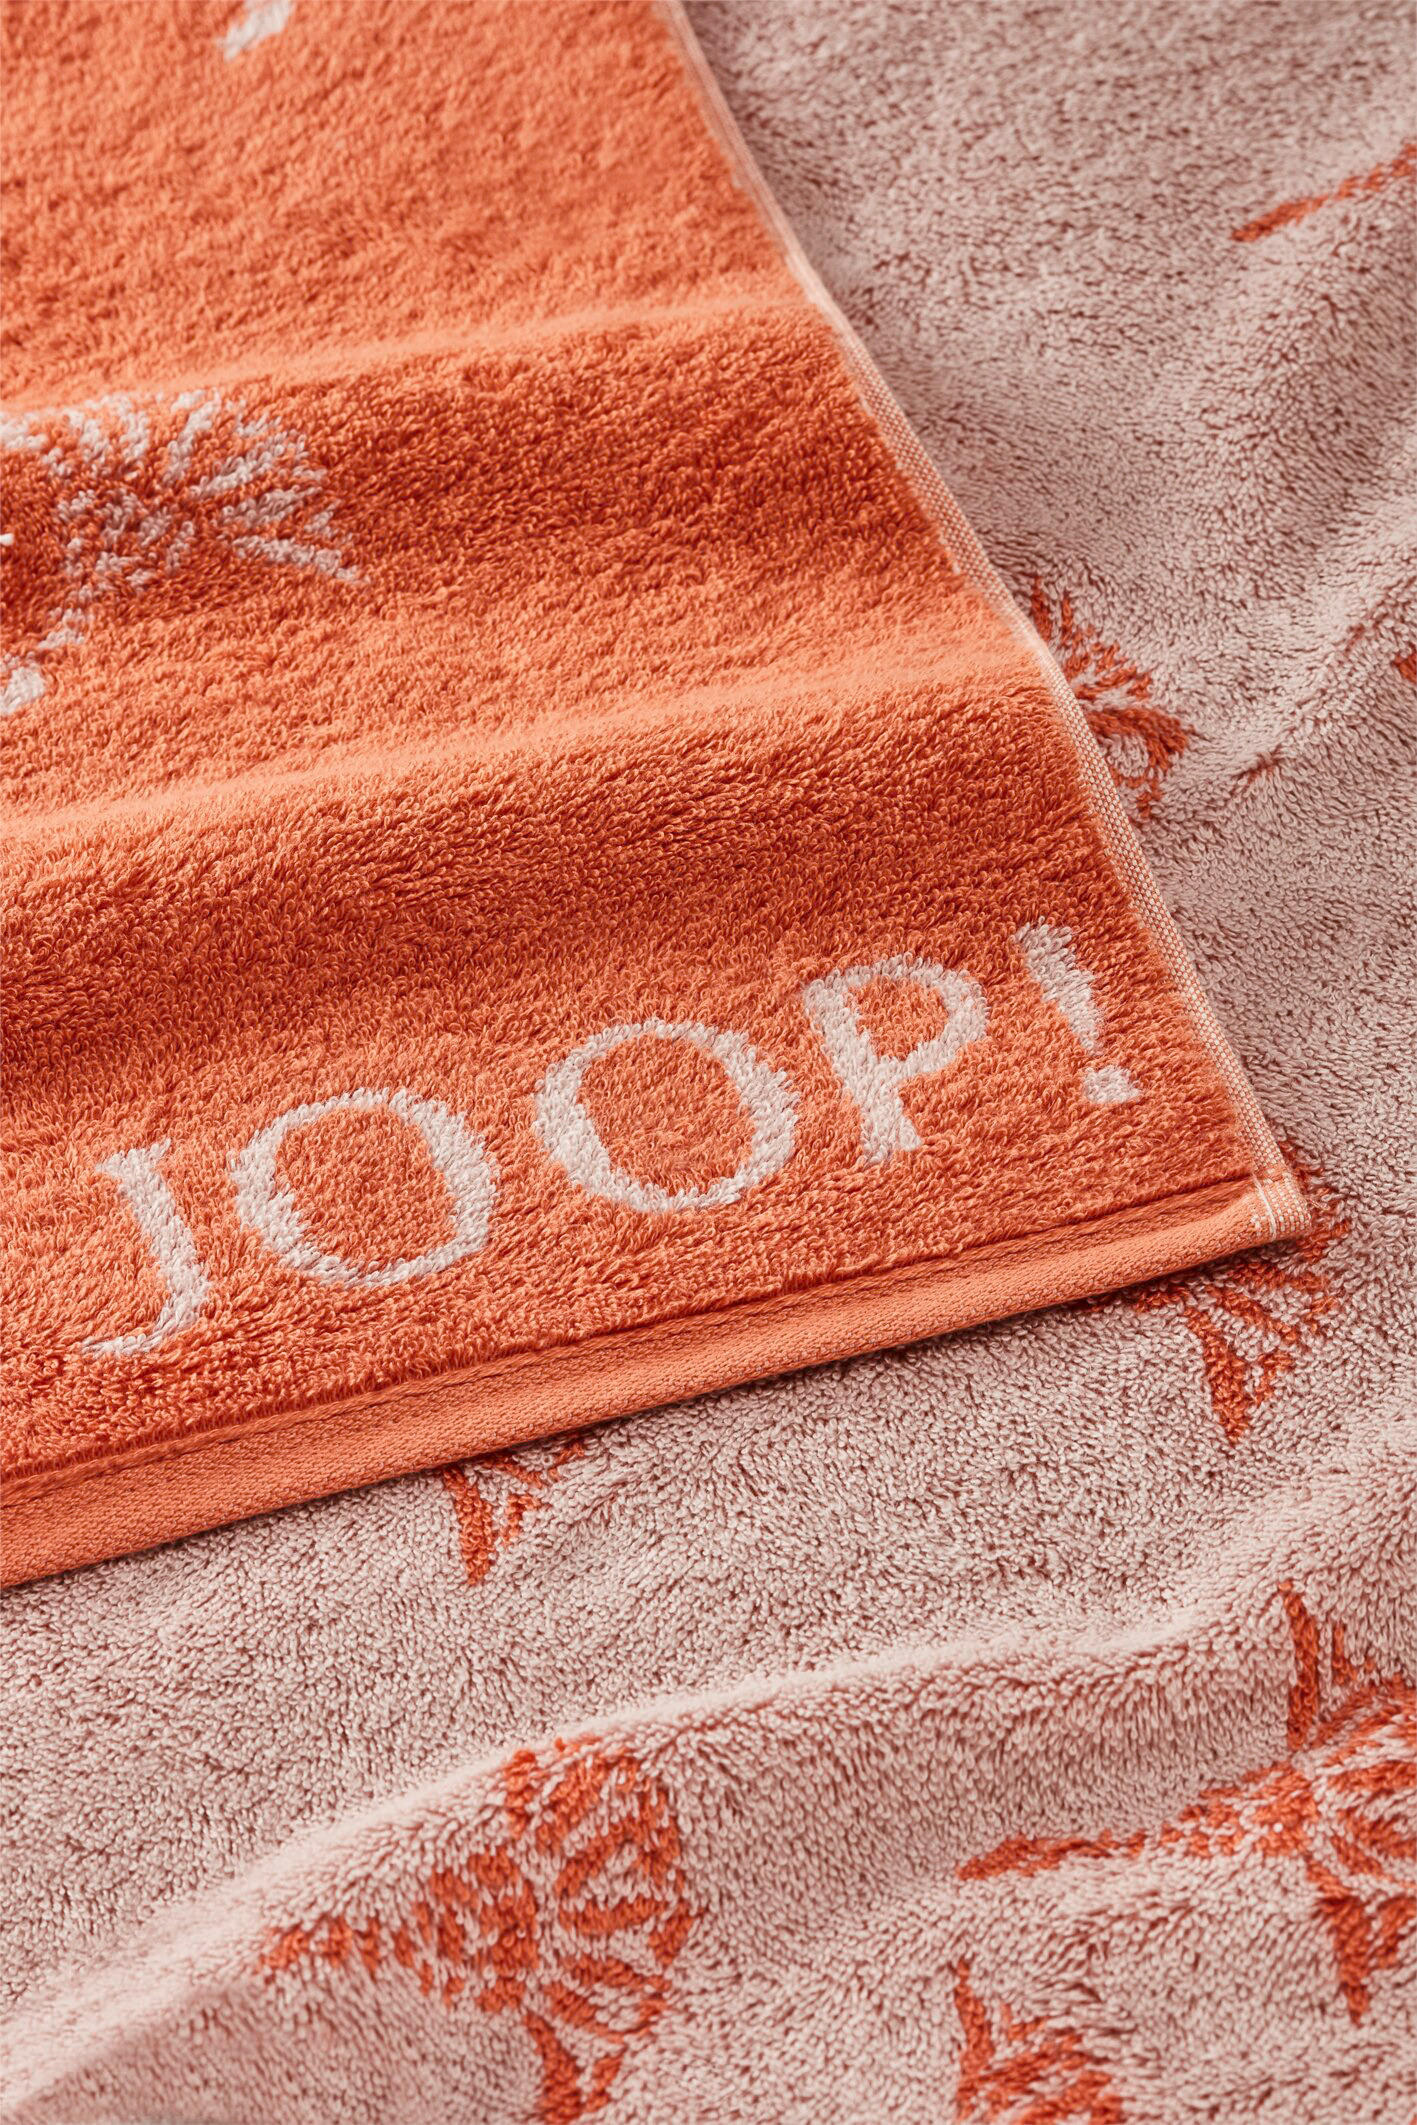 HANDTUCH Move  - Orange, Basics, Textil (50/100cm) - Joop!